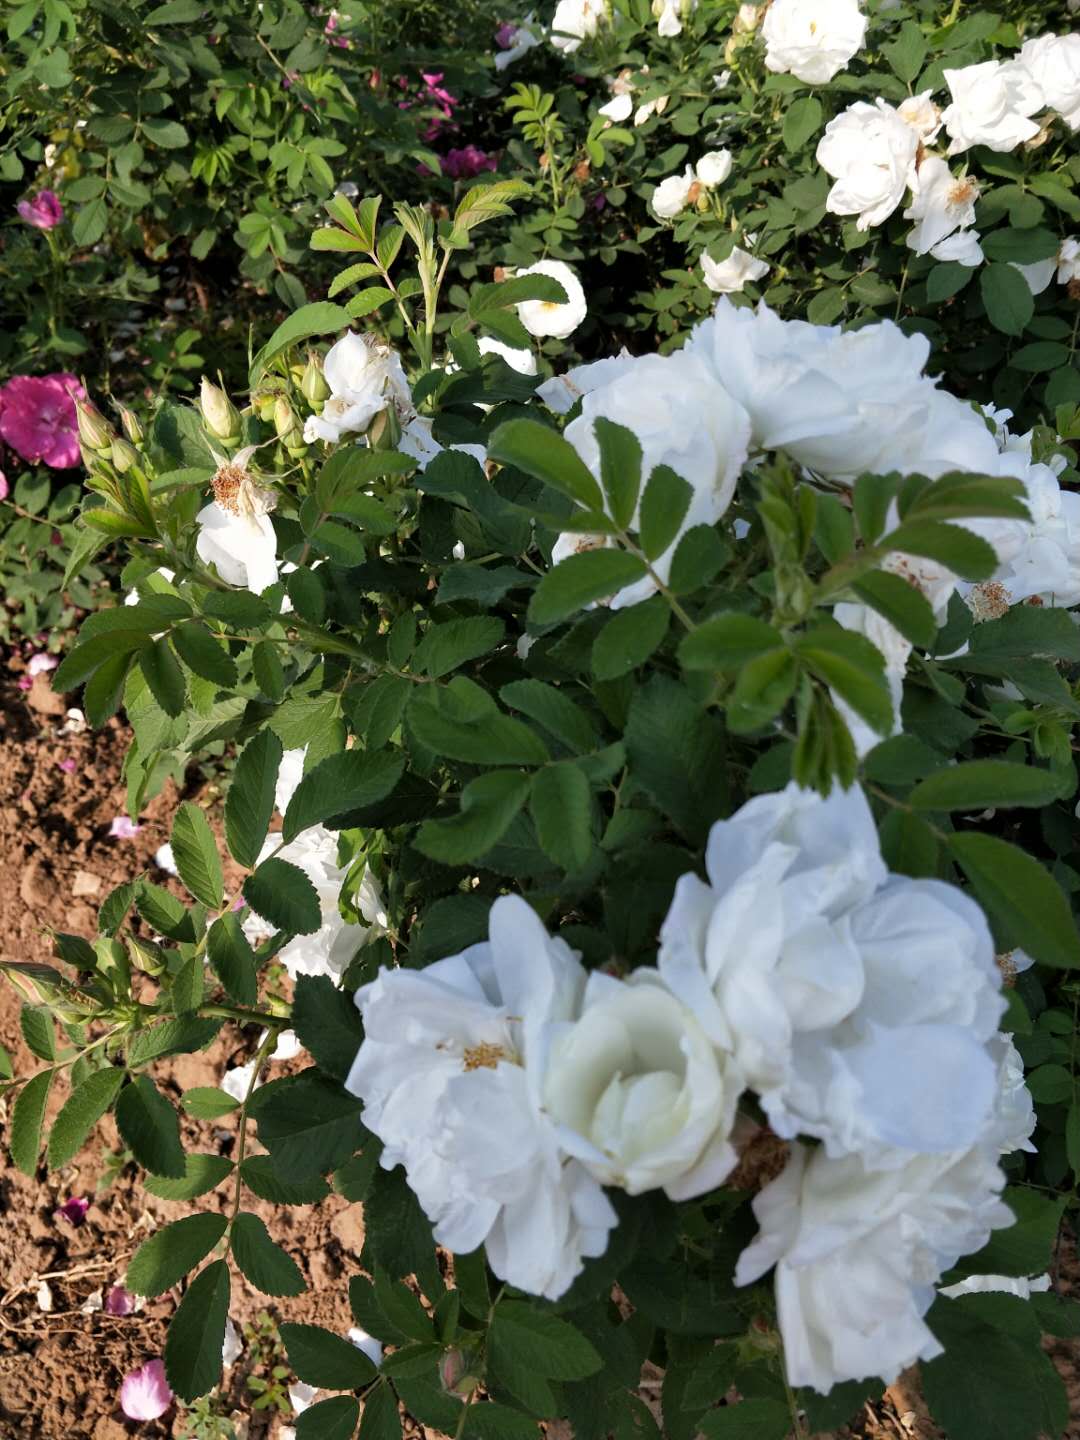 白色重瓣玫瑰苗白色重瓣玫瑰苗 山东白色玫瑰种苗批发商 大量供应白色玫瑰苗